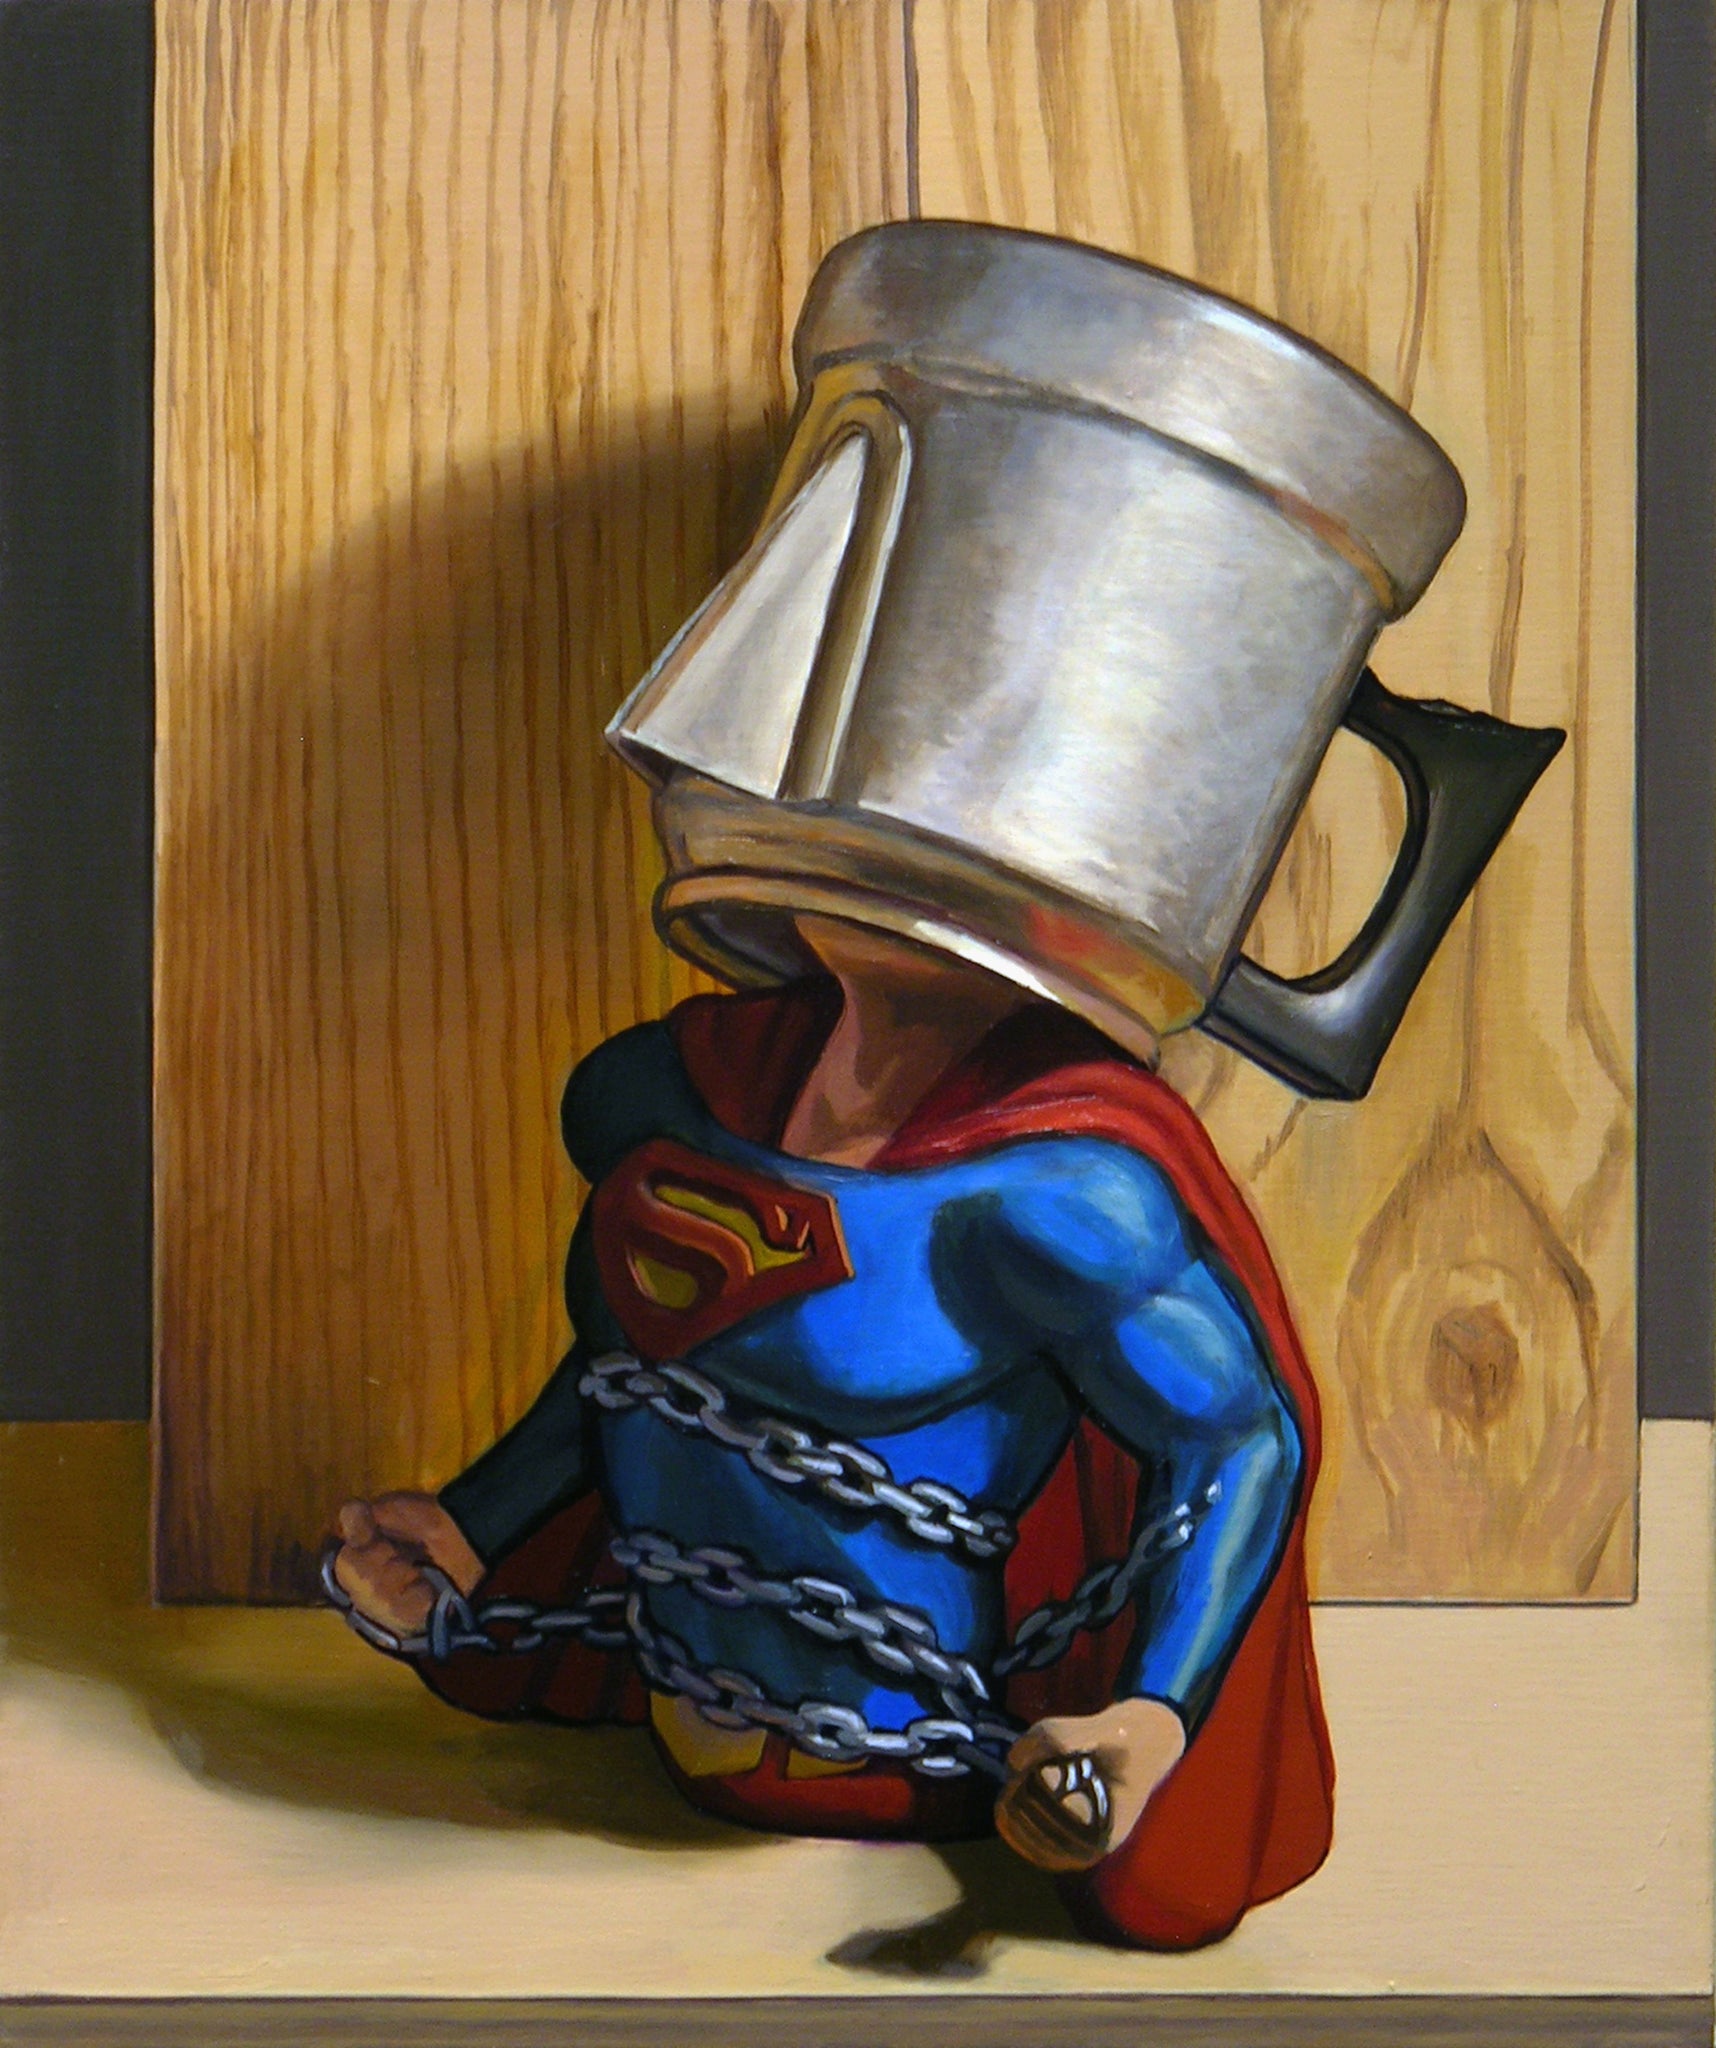 Frank Trankina, "Superhero Pothead No. 3"